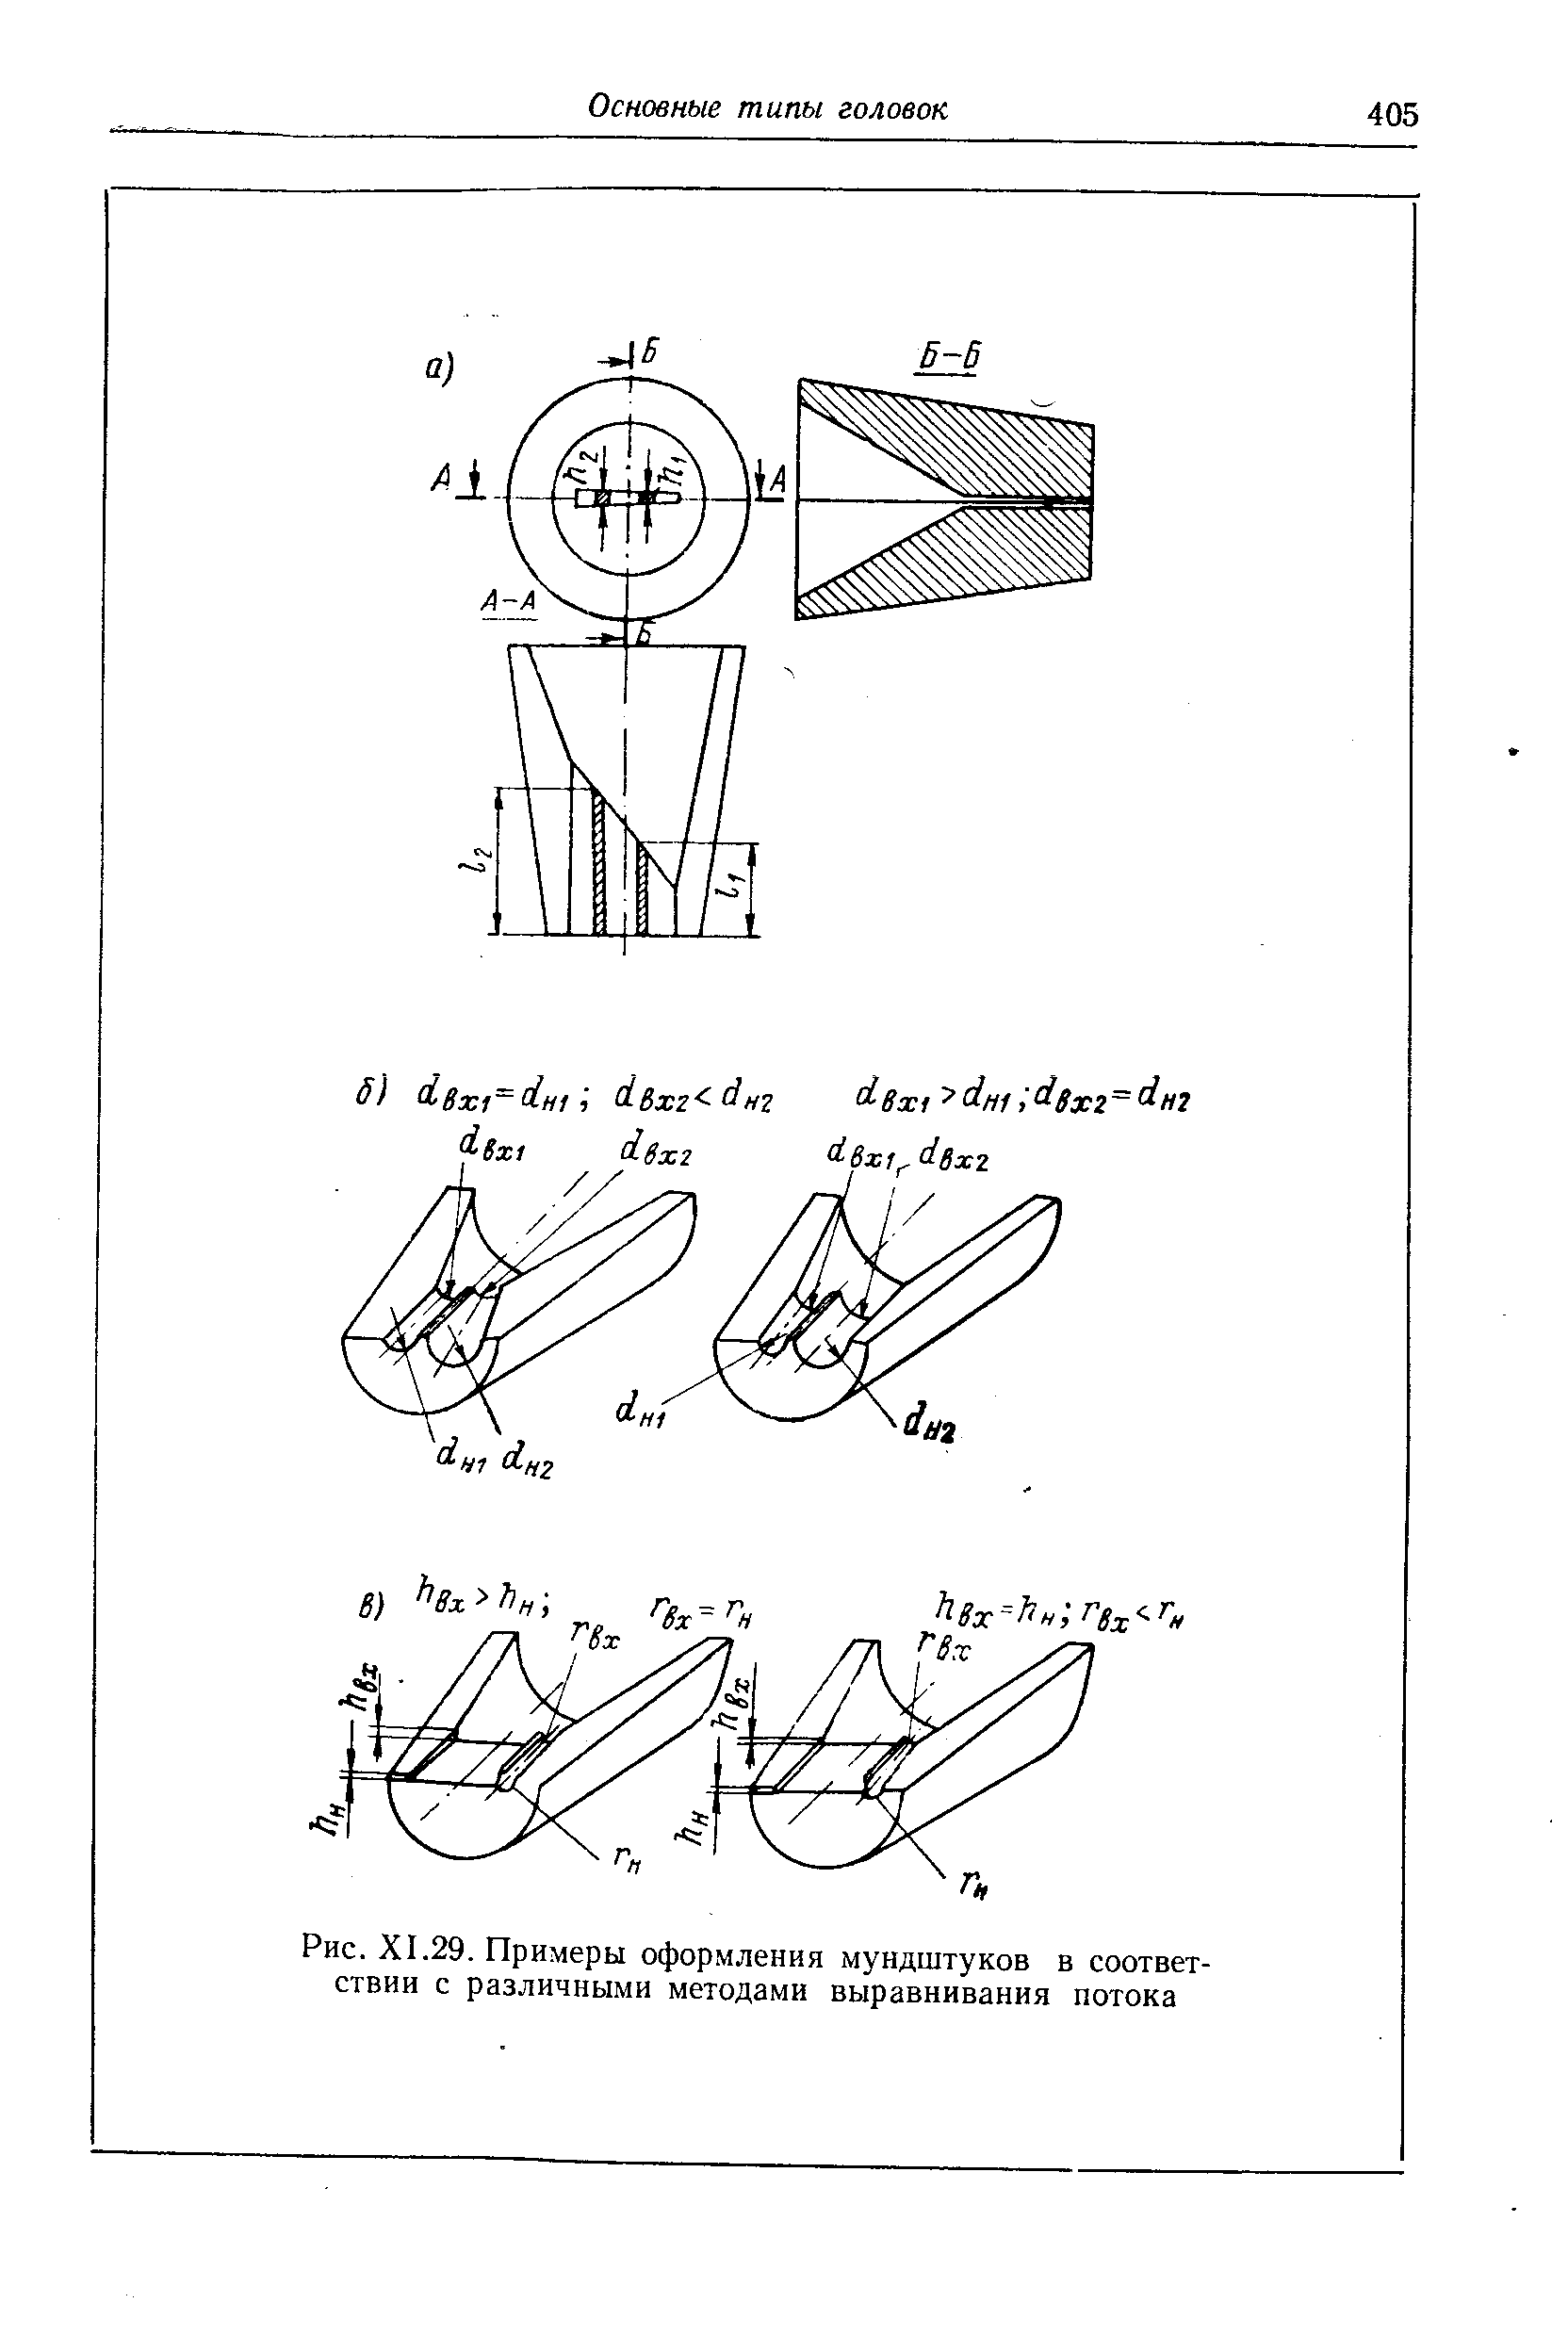 Рис. XI.29. Примеры оформления мундштуков в соответствии с различными методами выравнивания потока
